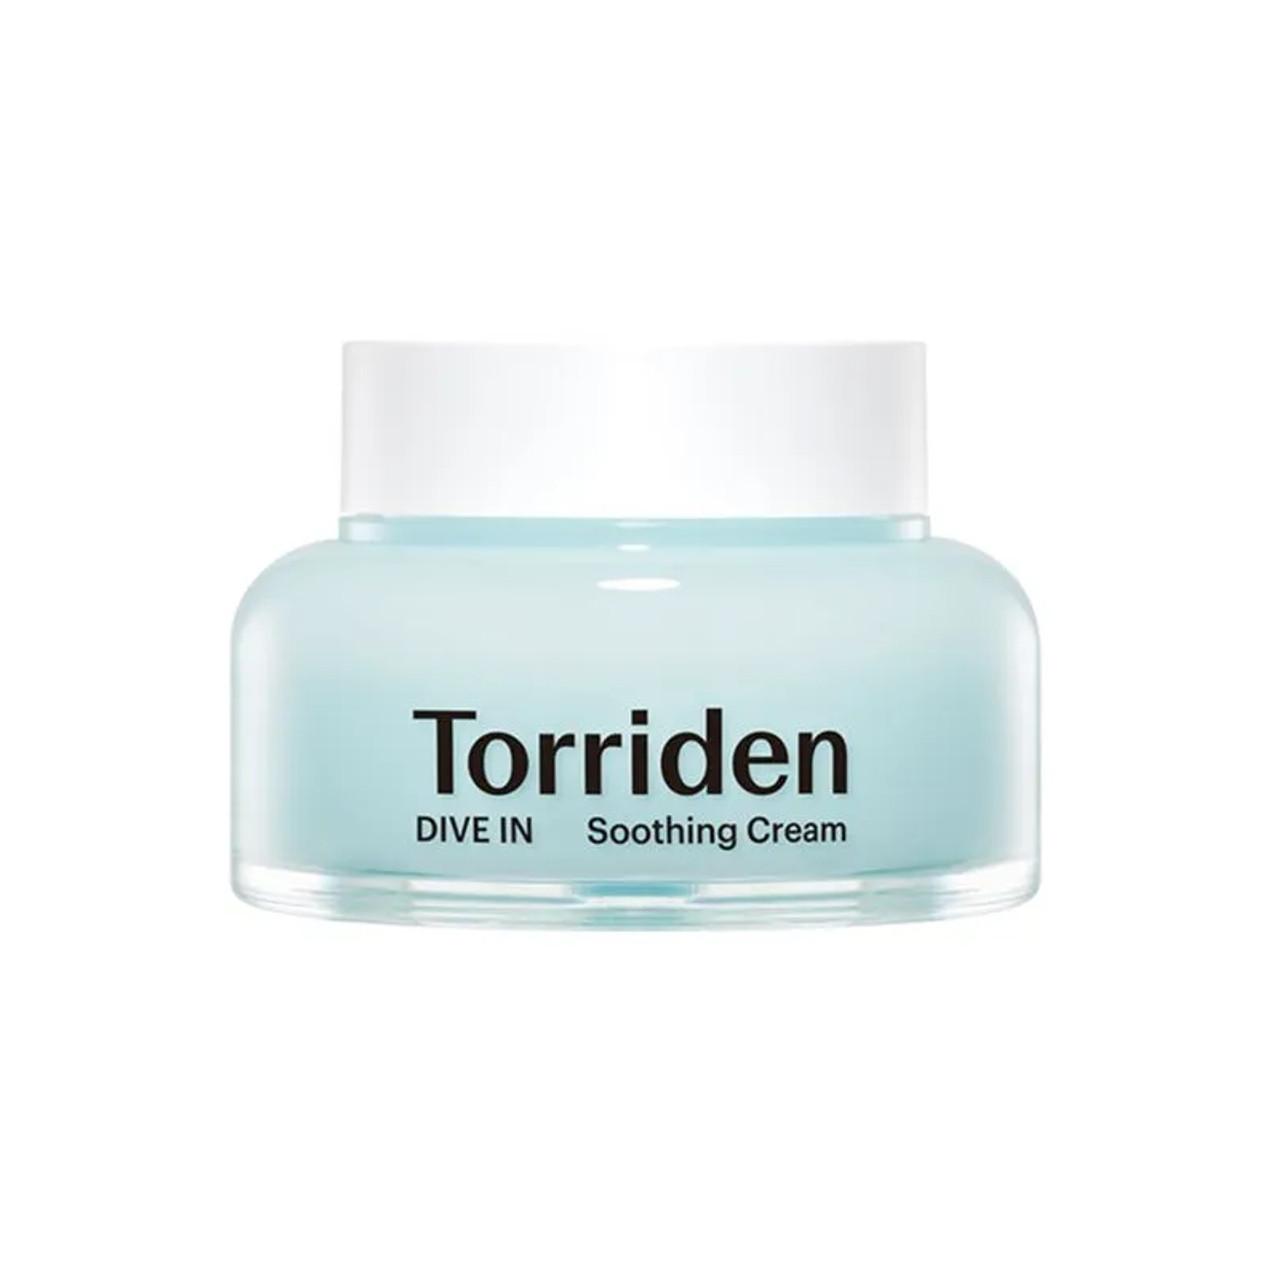 Torriden Dive-In Low Molecular Hyaluronic Acid Soothing Cream